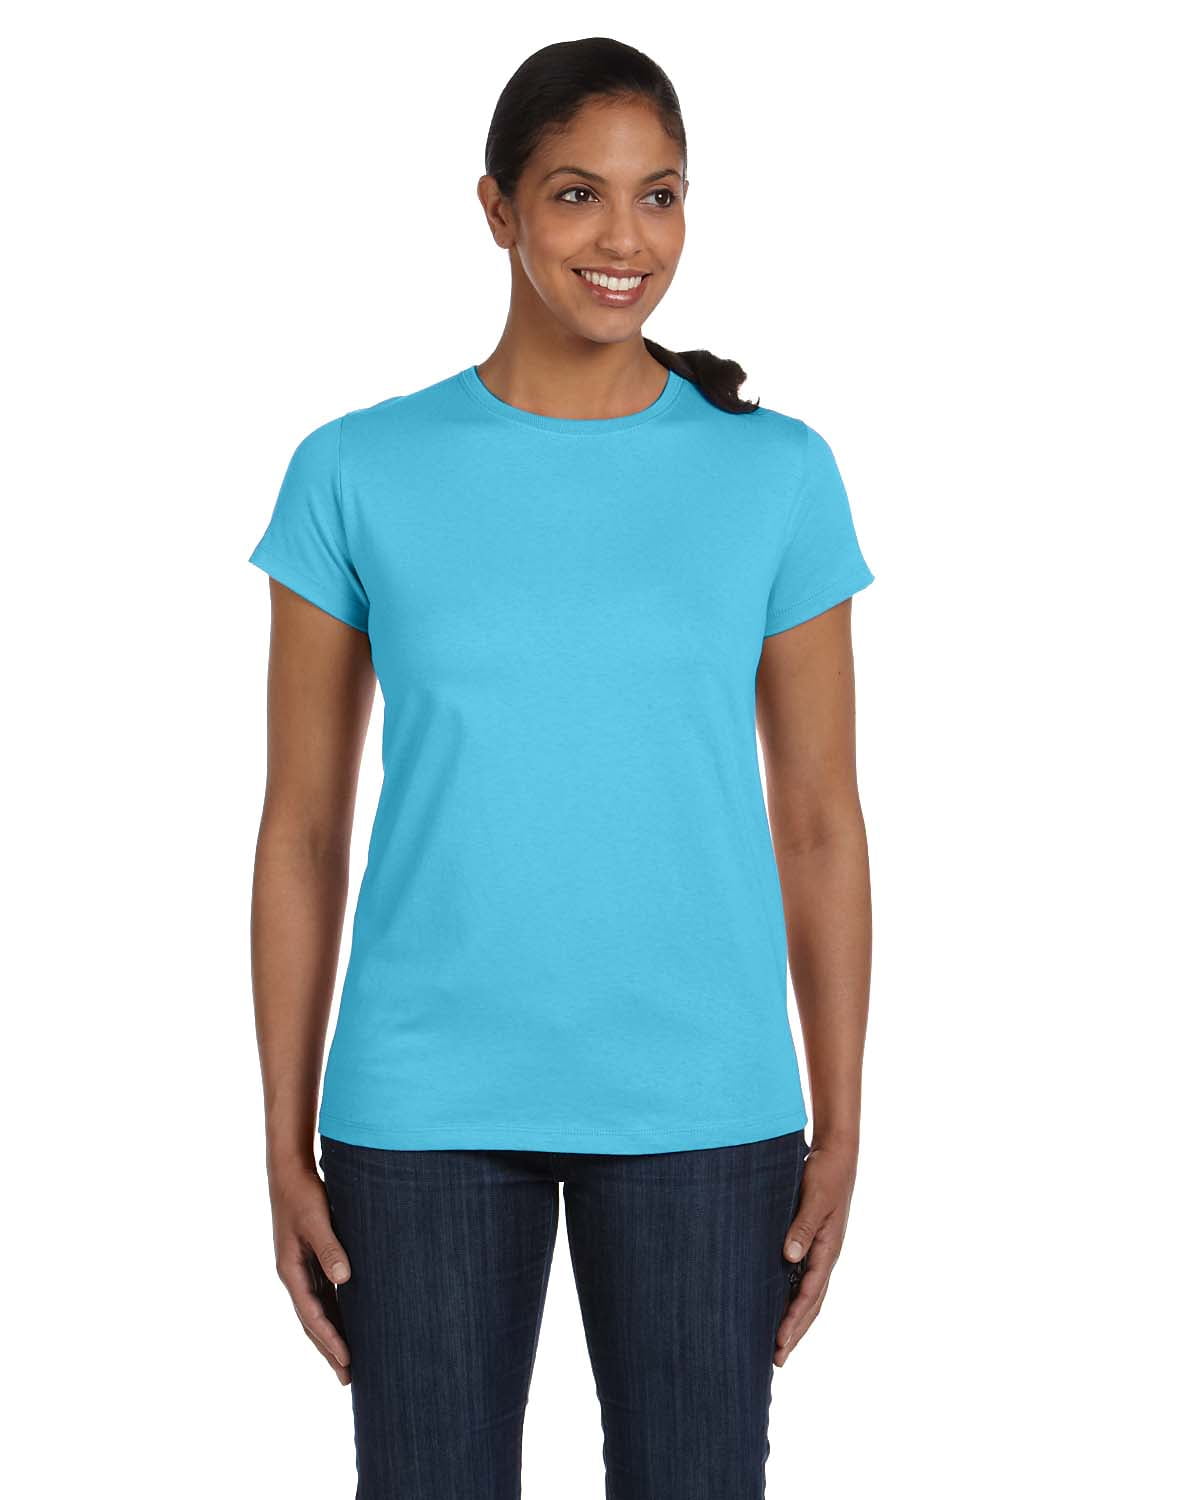 Hanes Ladies' 6.1 oz. Tagless T-Shirt - 5680 - Walmart.com